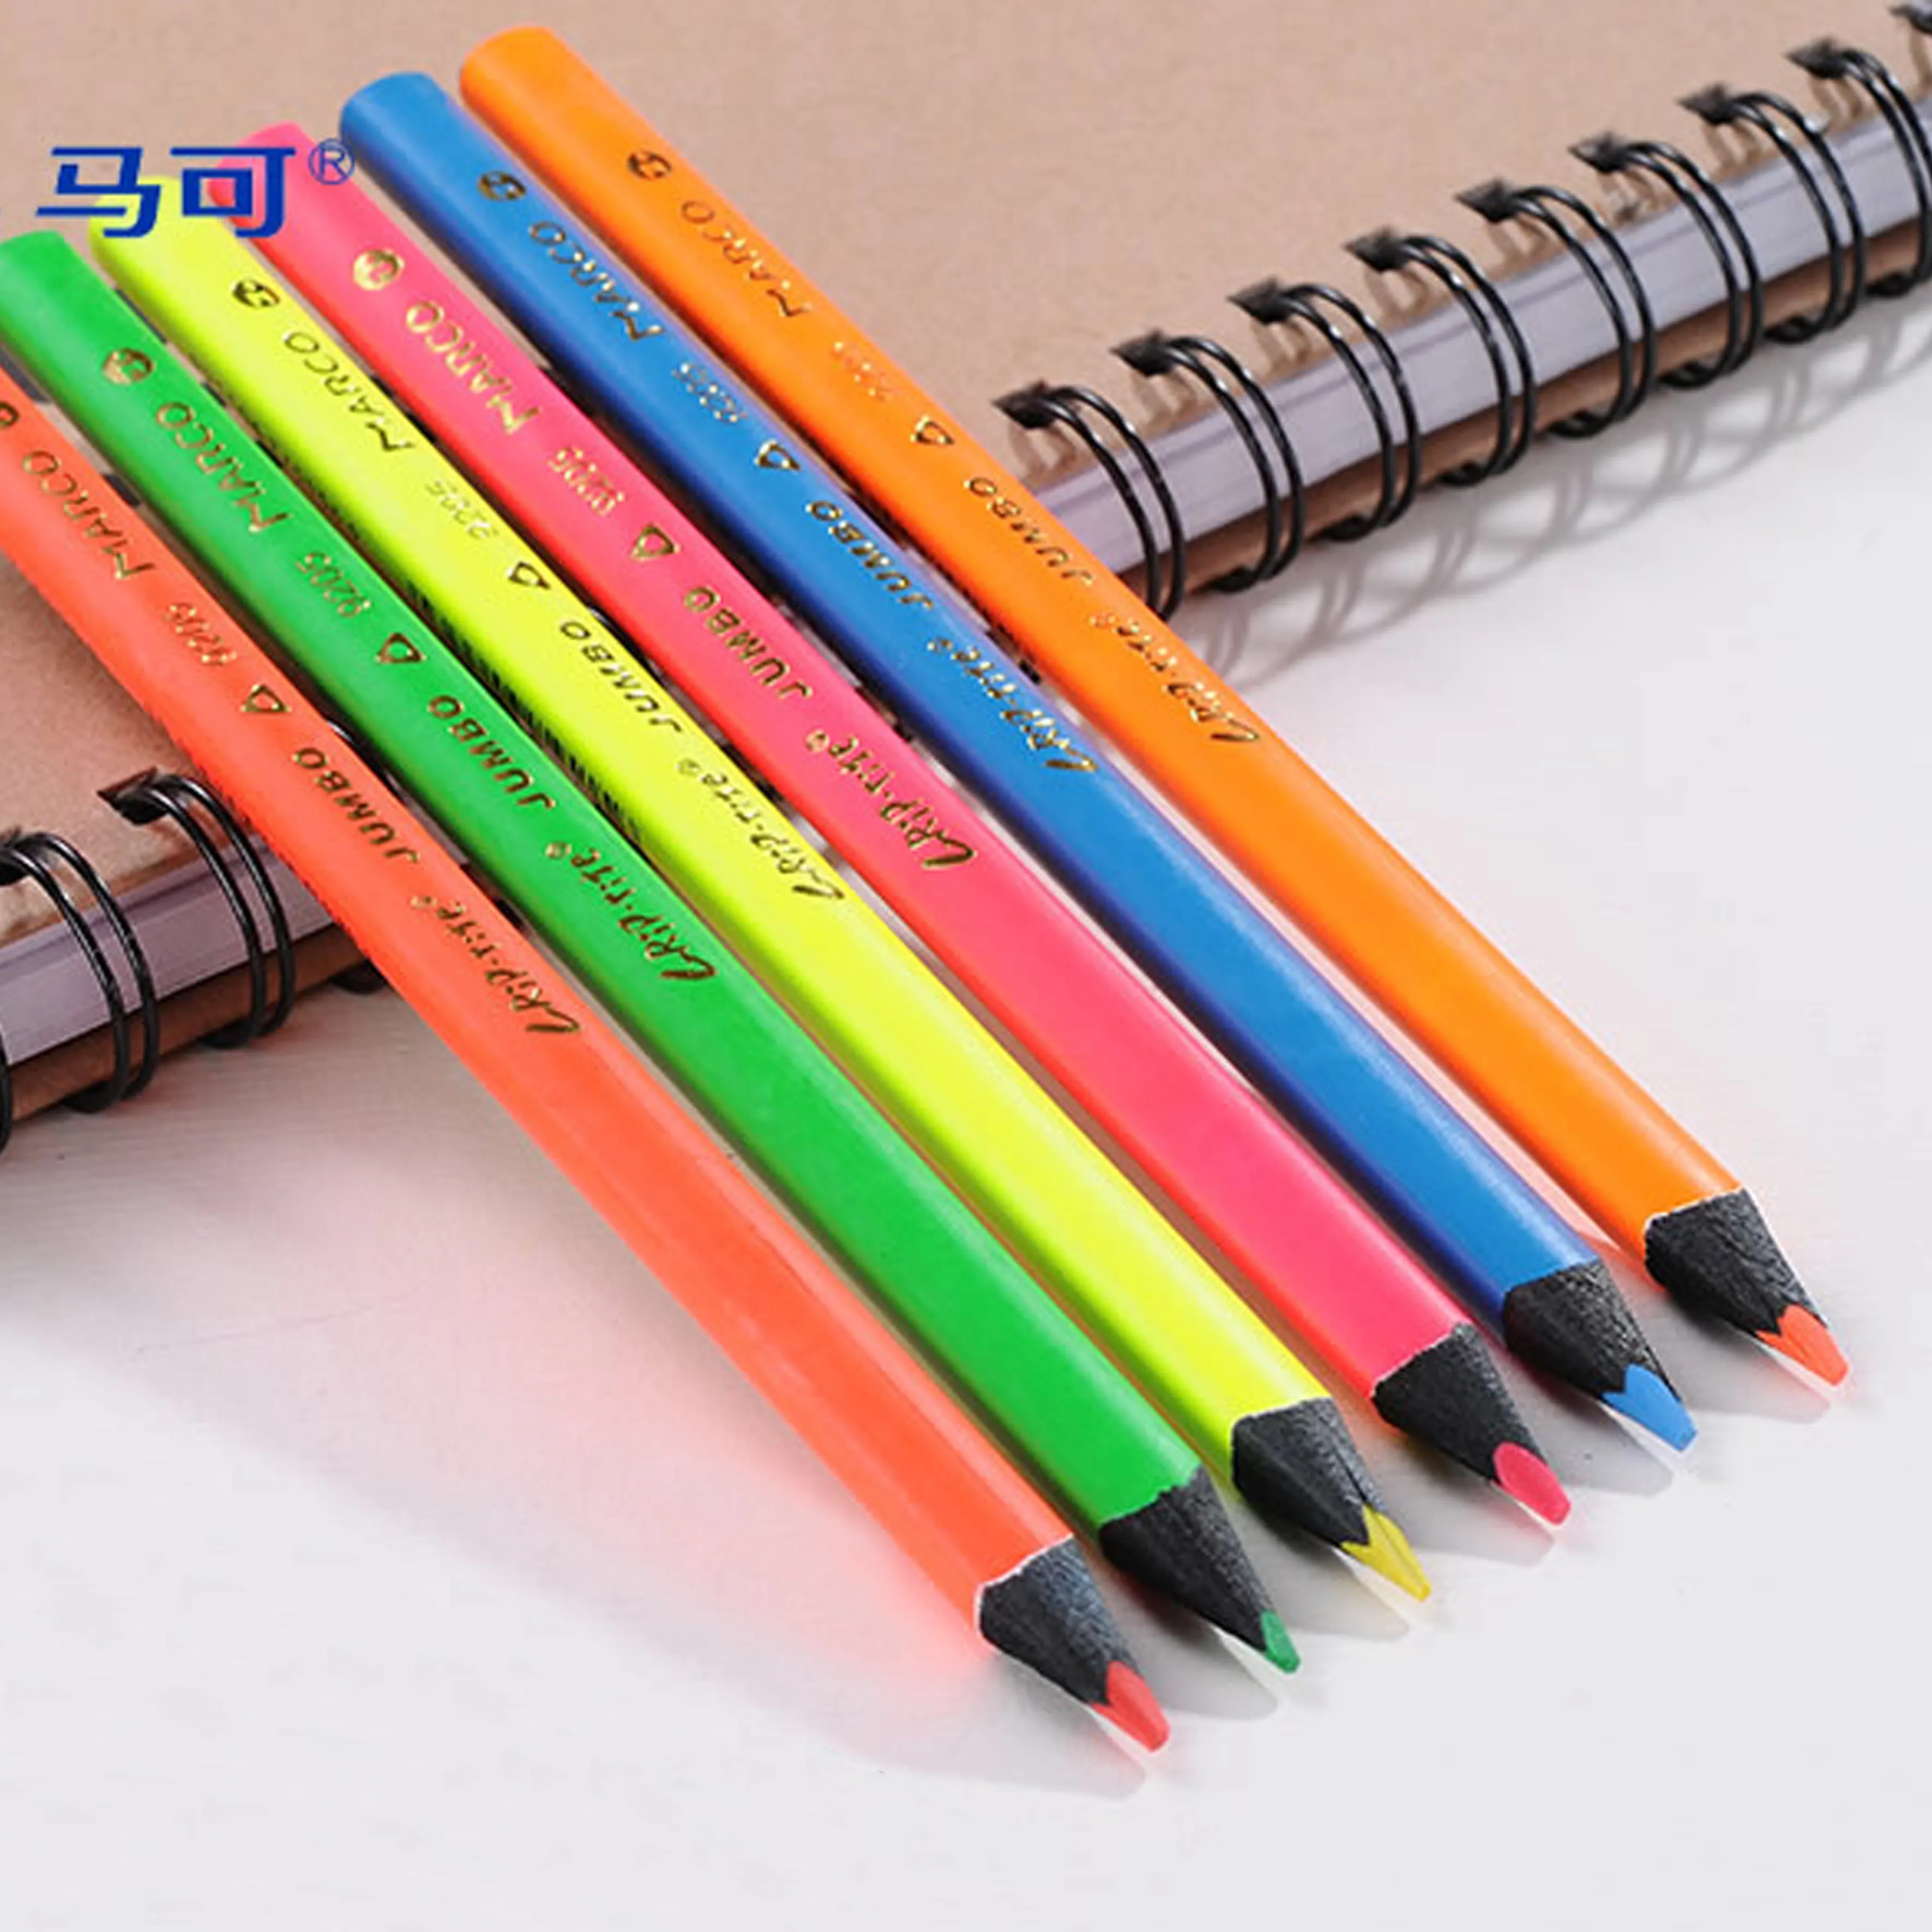 MARCO triangular jumbo neón fluorescente marcador lápiz y sacapuntas 6 colores artista dibujo lápiz de color set